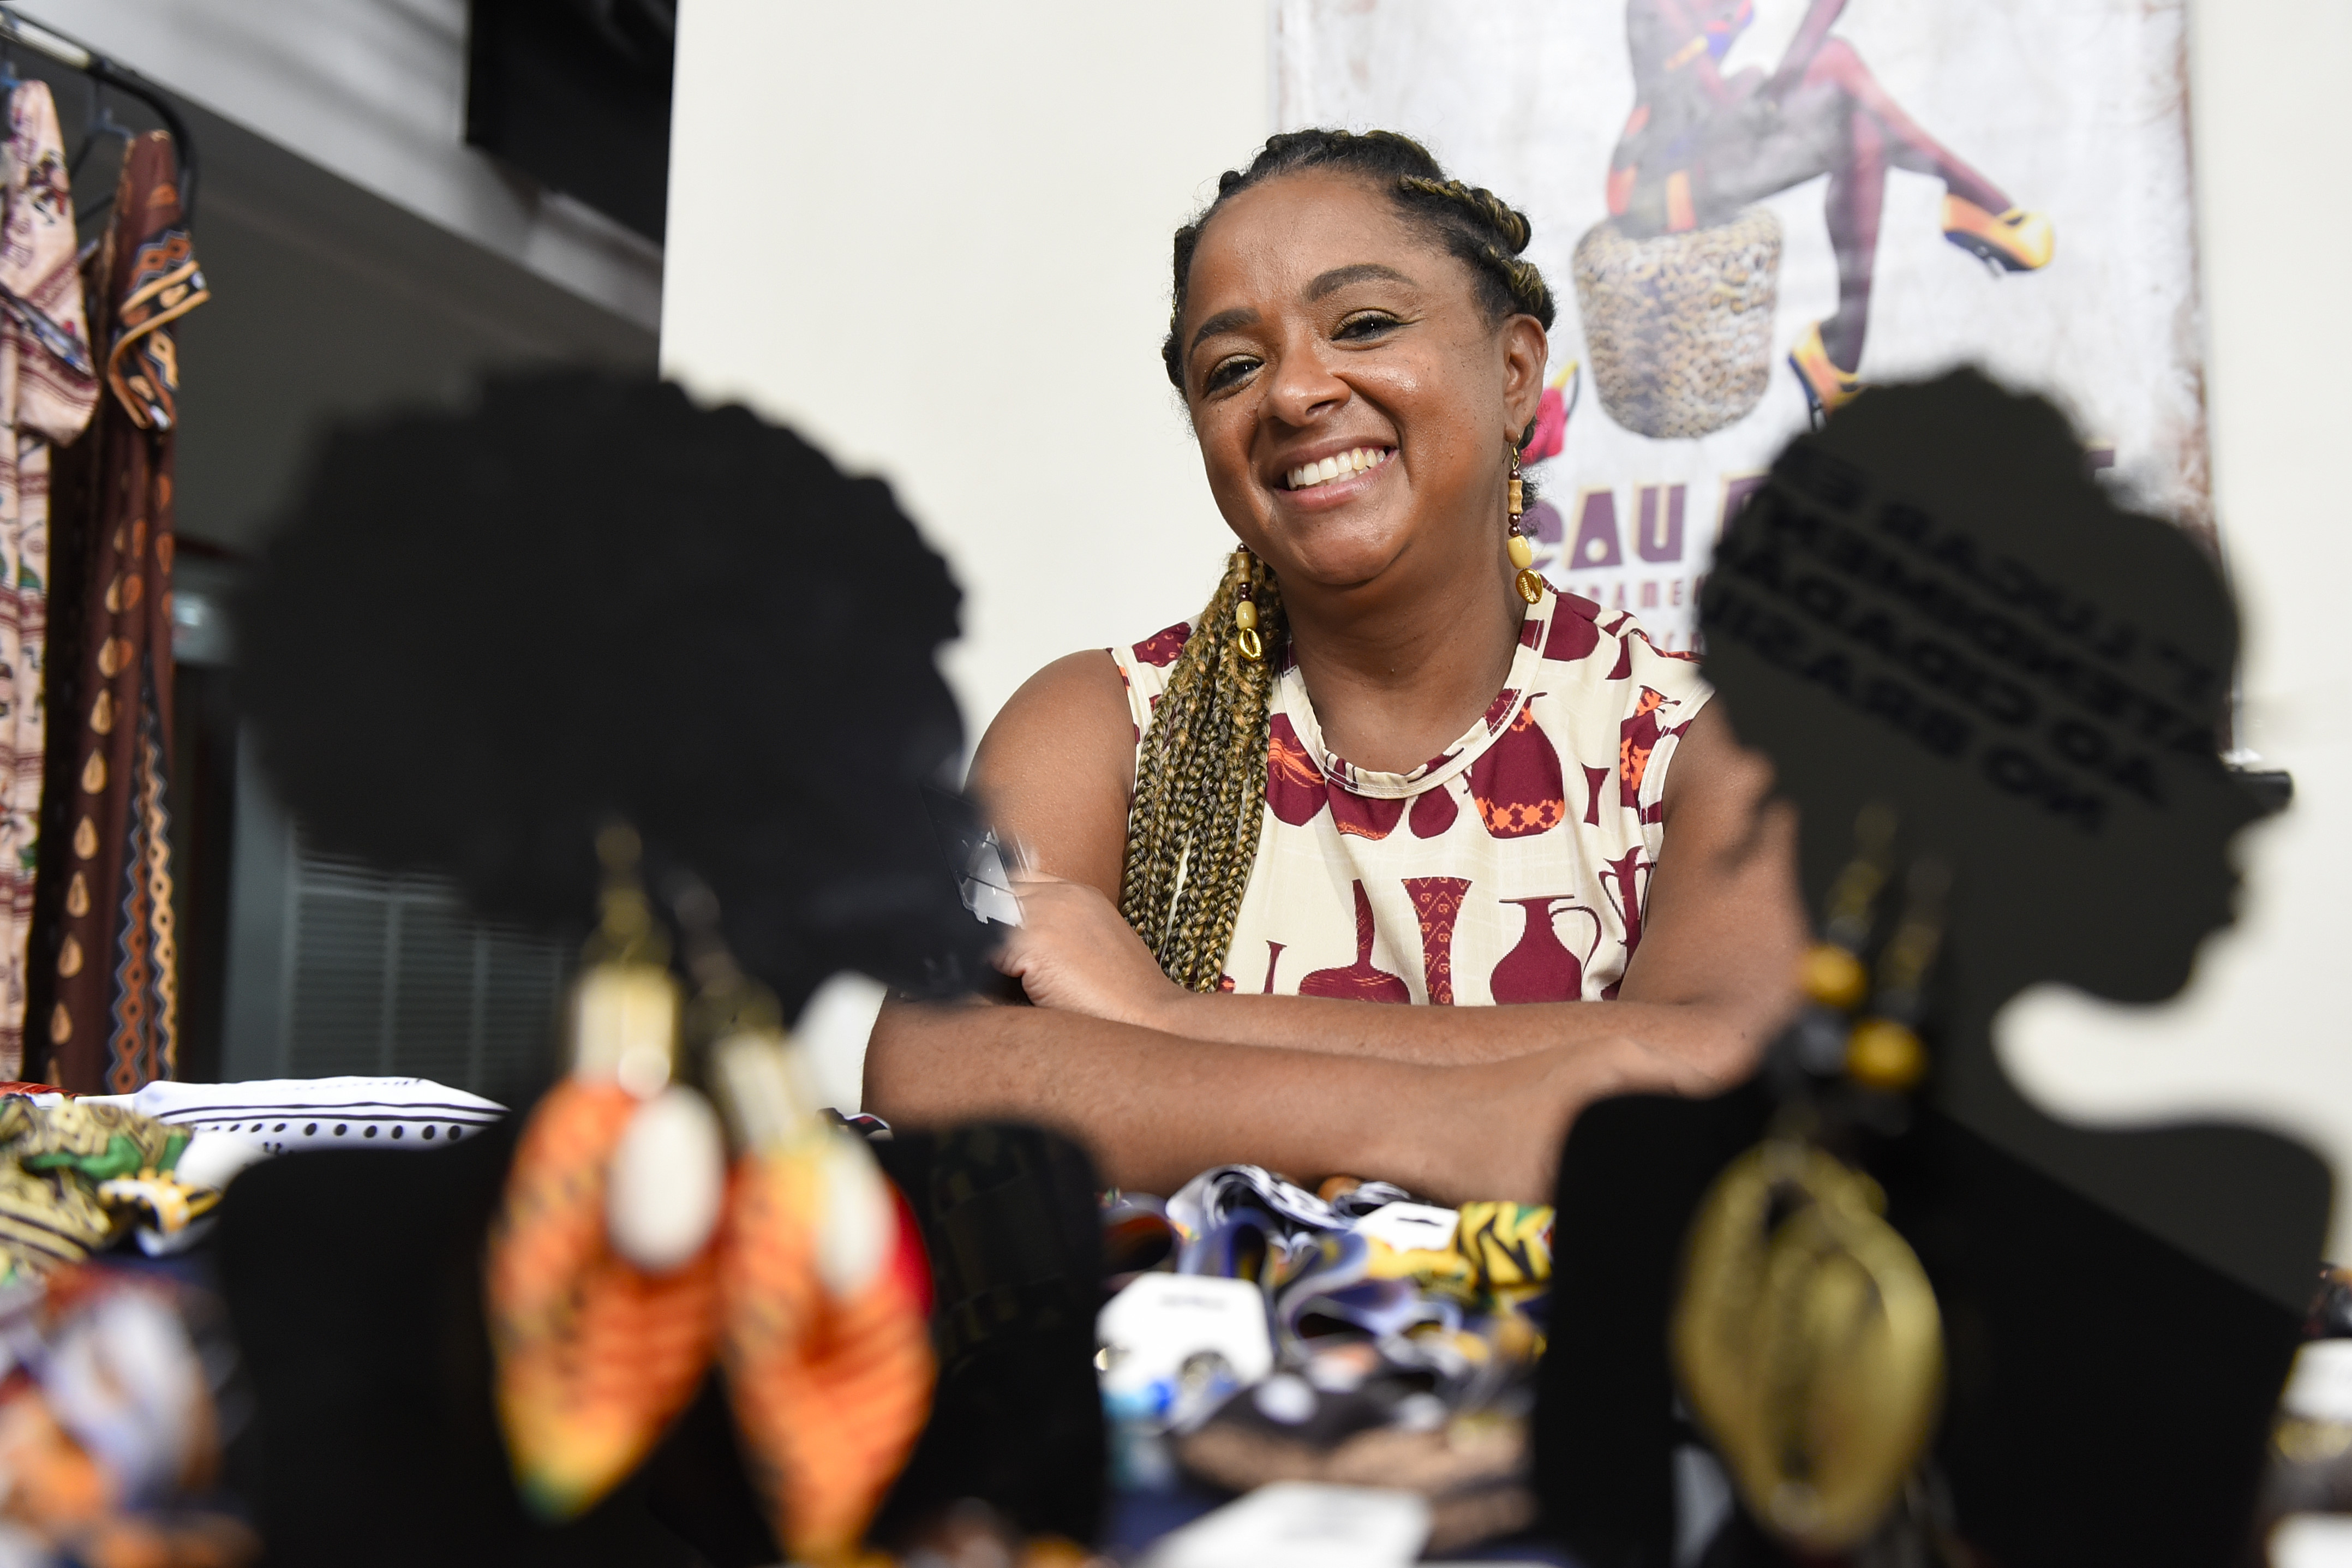 halvkugle personificering Udfør Feira destaca o empreendedorismo feminino negro em Vitória | A Gazeta